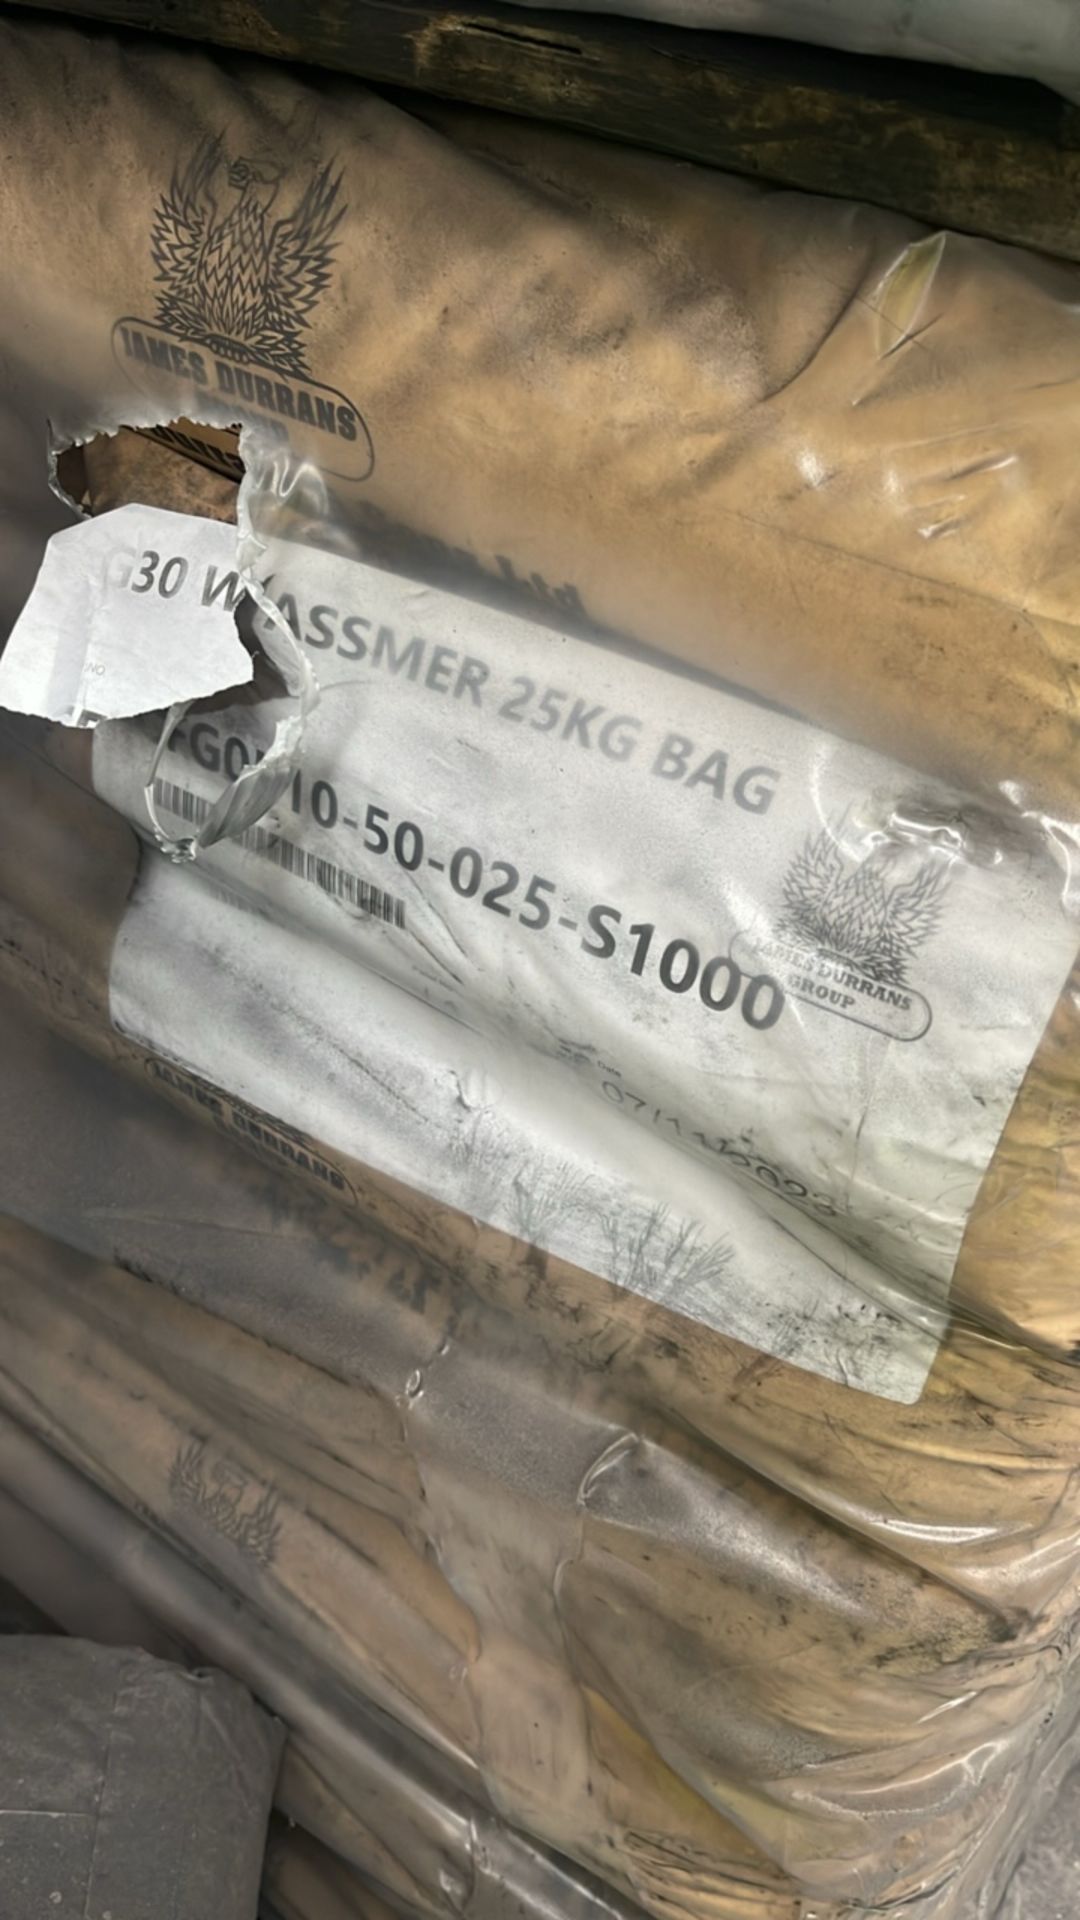 2.5 Pallets G30 Wassmer 25kg Bags - Image 2 of 3